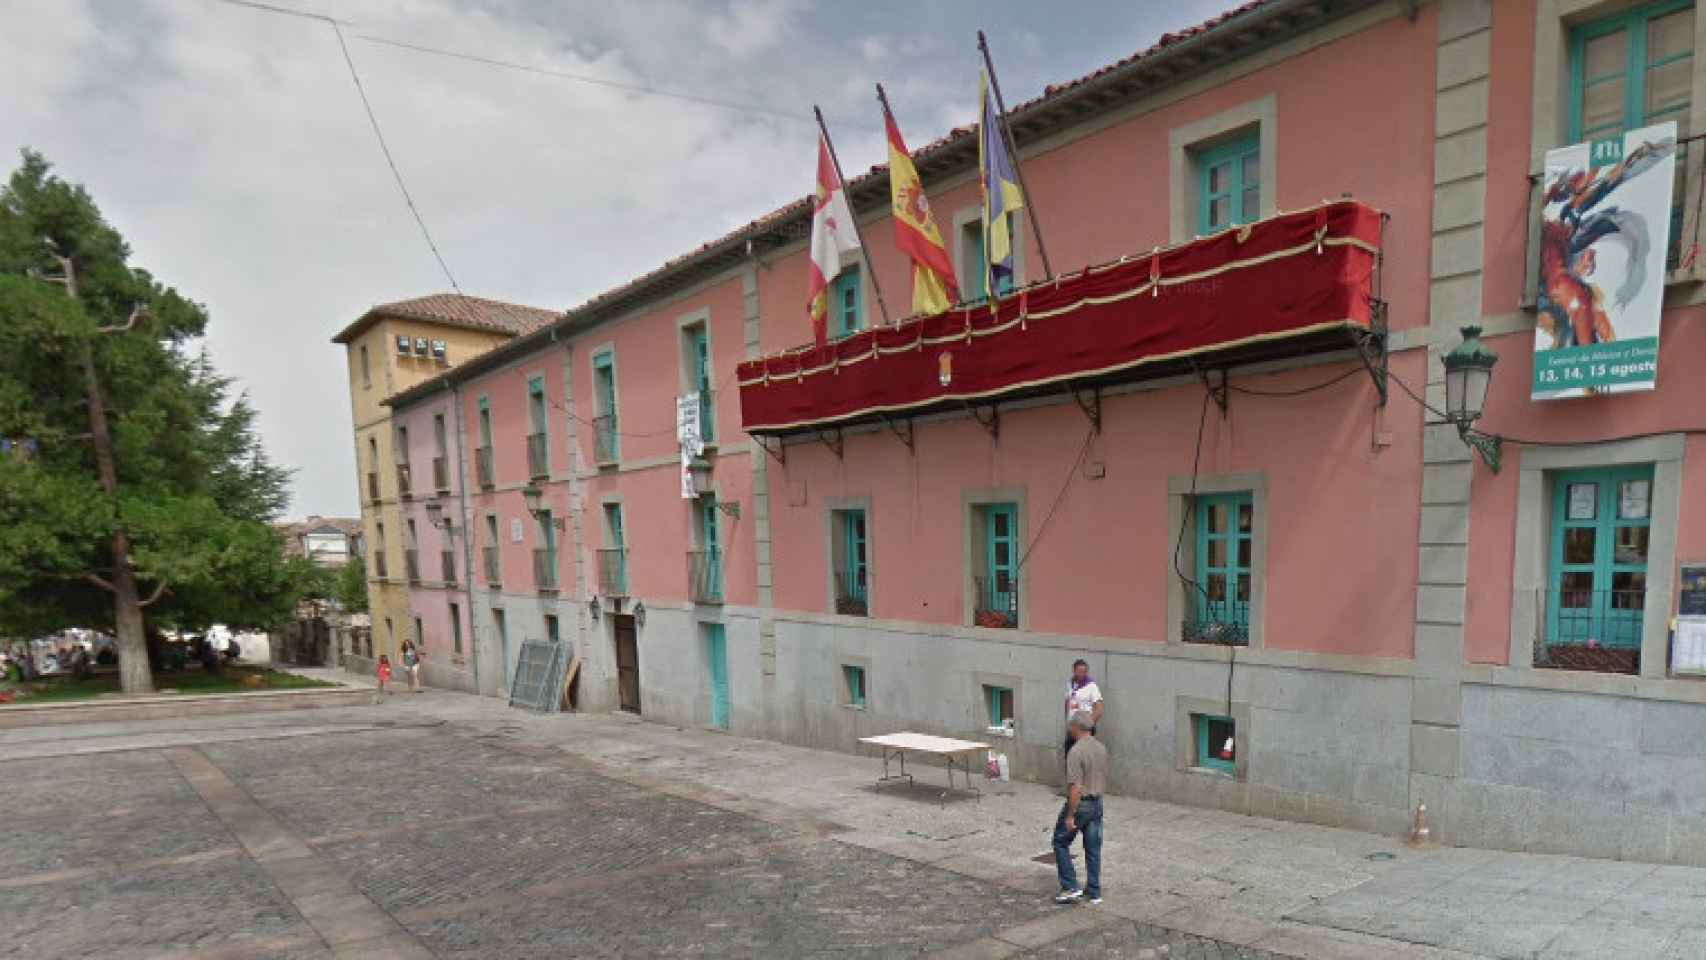 Ayuntamiento del Real Sitio de San Ildefonso